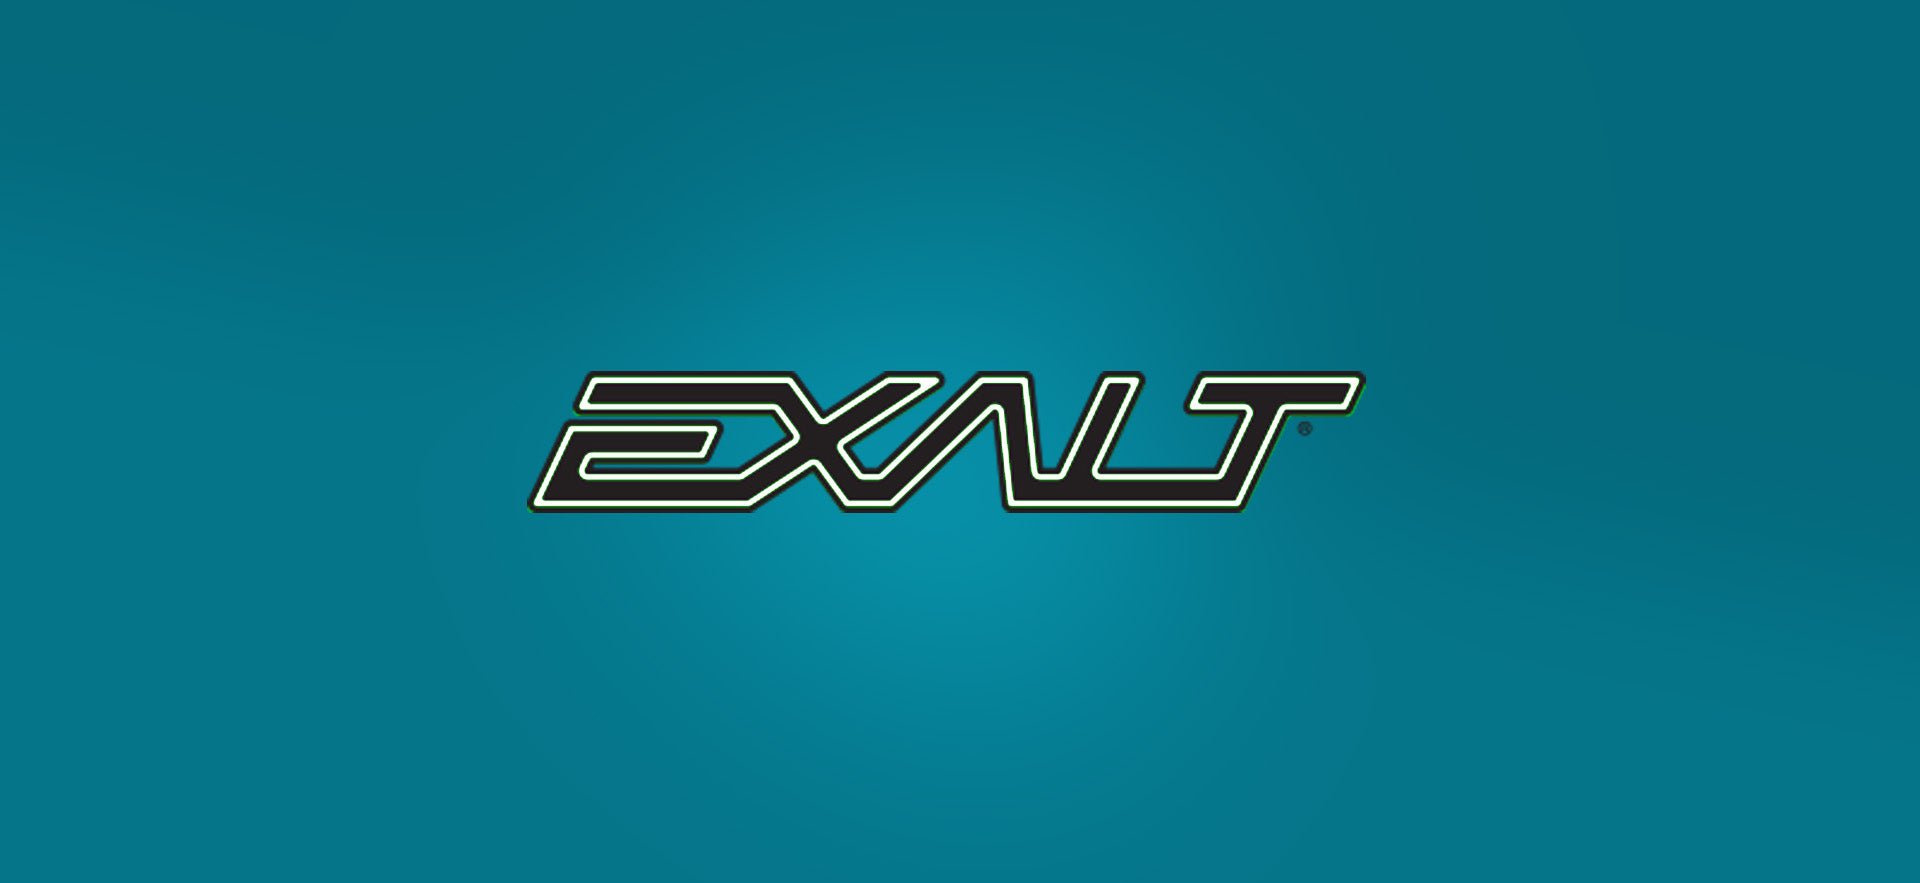 Exalt - Weekend-Warrior.Shop